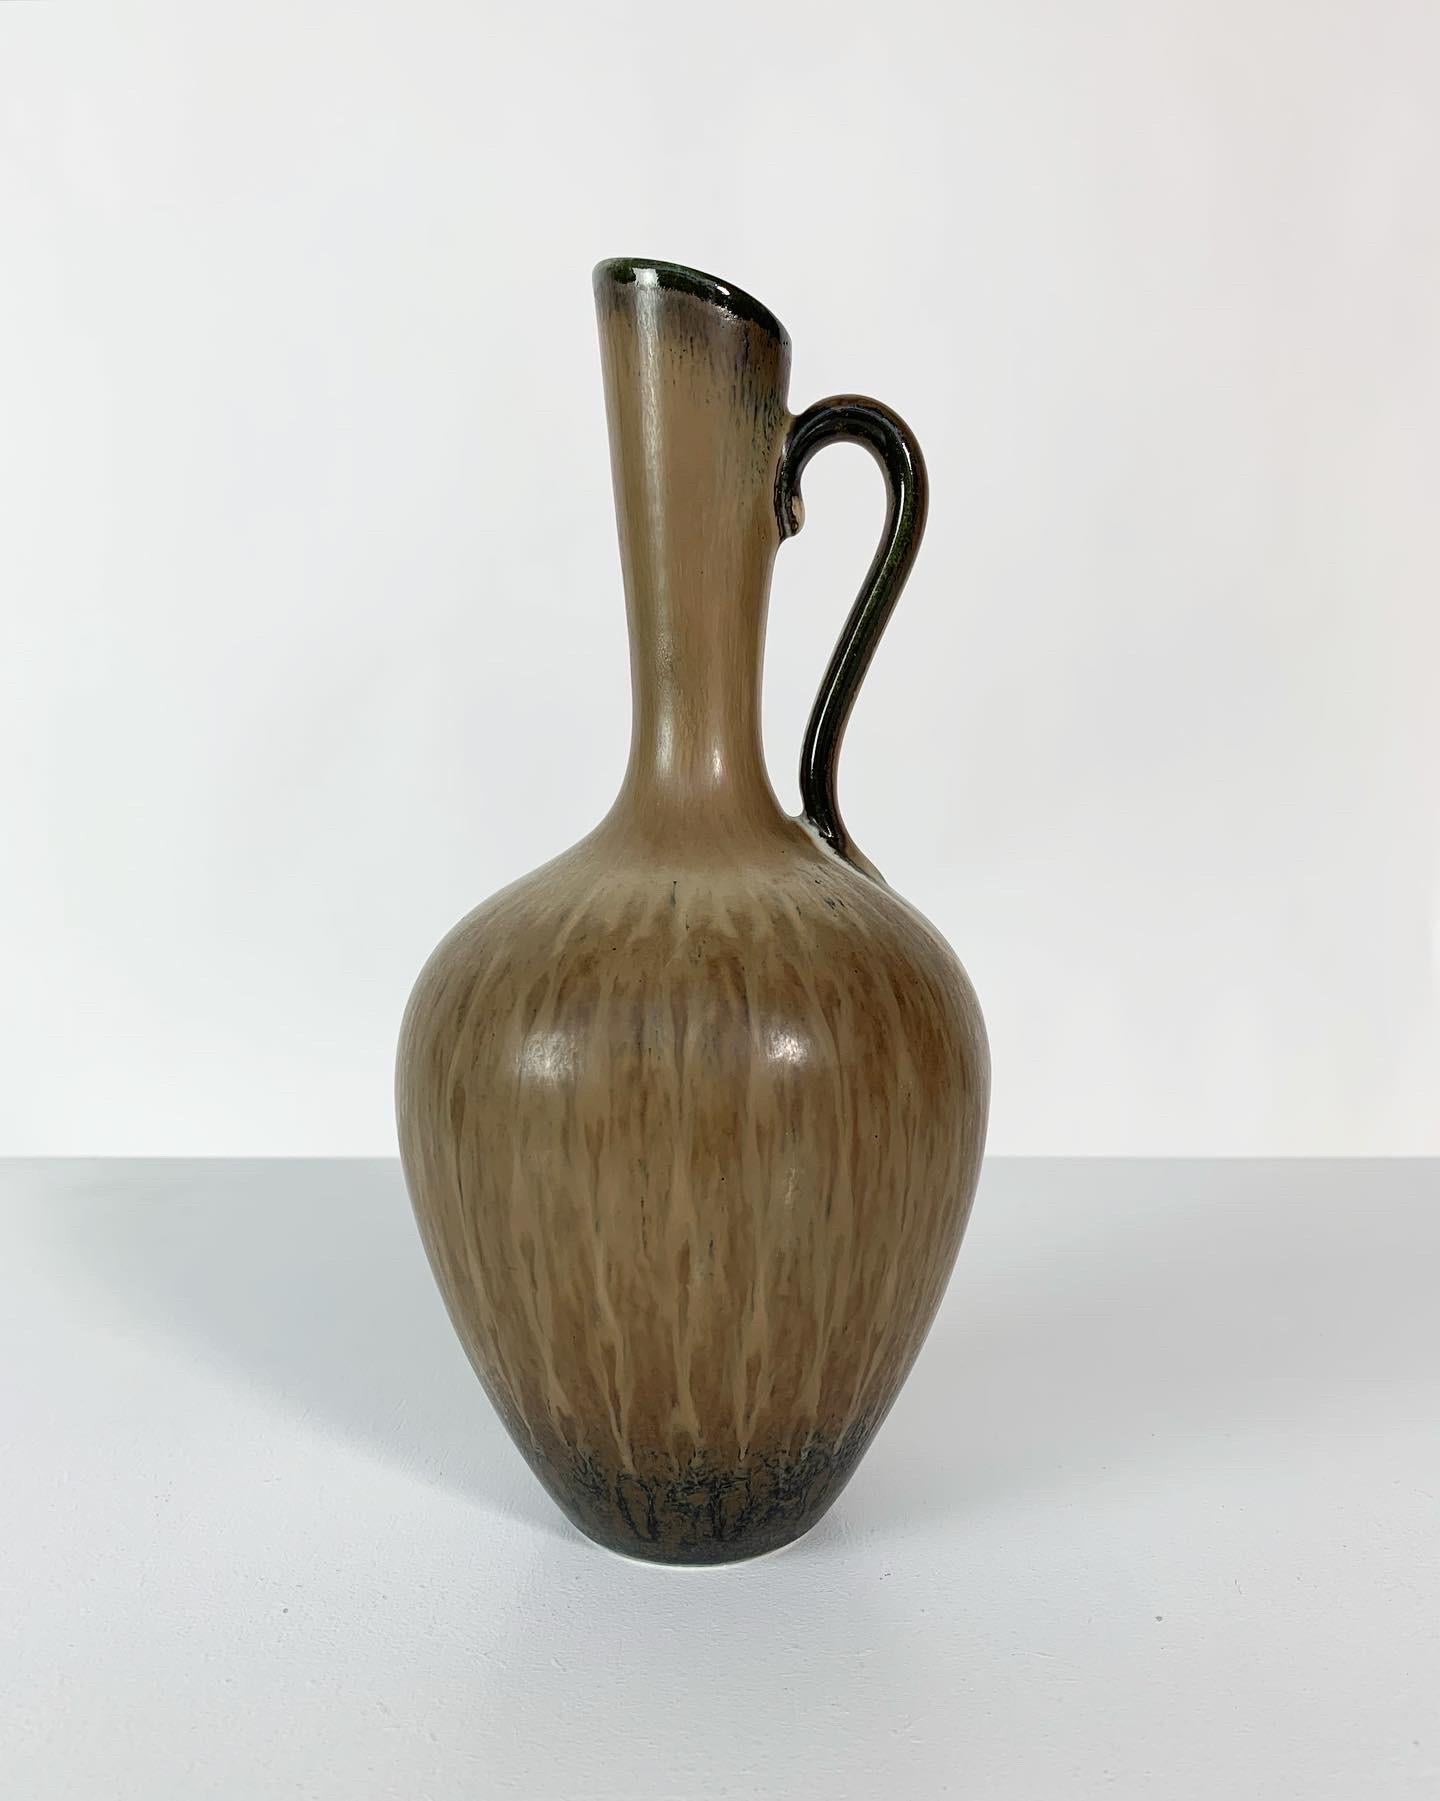 Vase en grès de Gunnar Nylund, modèle AUQ dans des teintes de brun, beige et noir. Fabriqué à la main dans les années 1950 en Suède pour l'usine Rörstrand. Un tri de première qualité.

Hauteur : 23,5 cm
Diamètre : 10 cm.